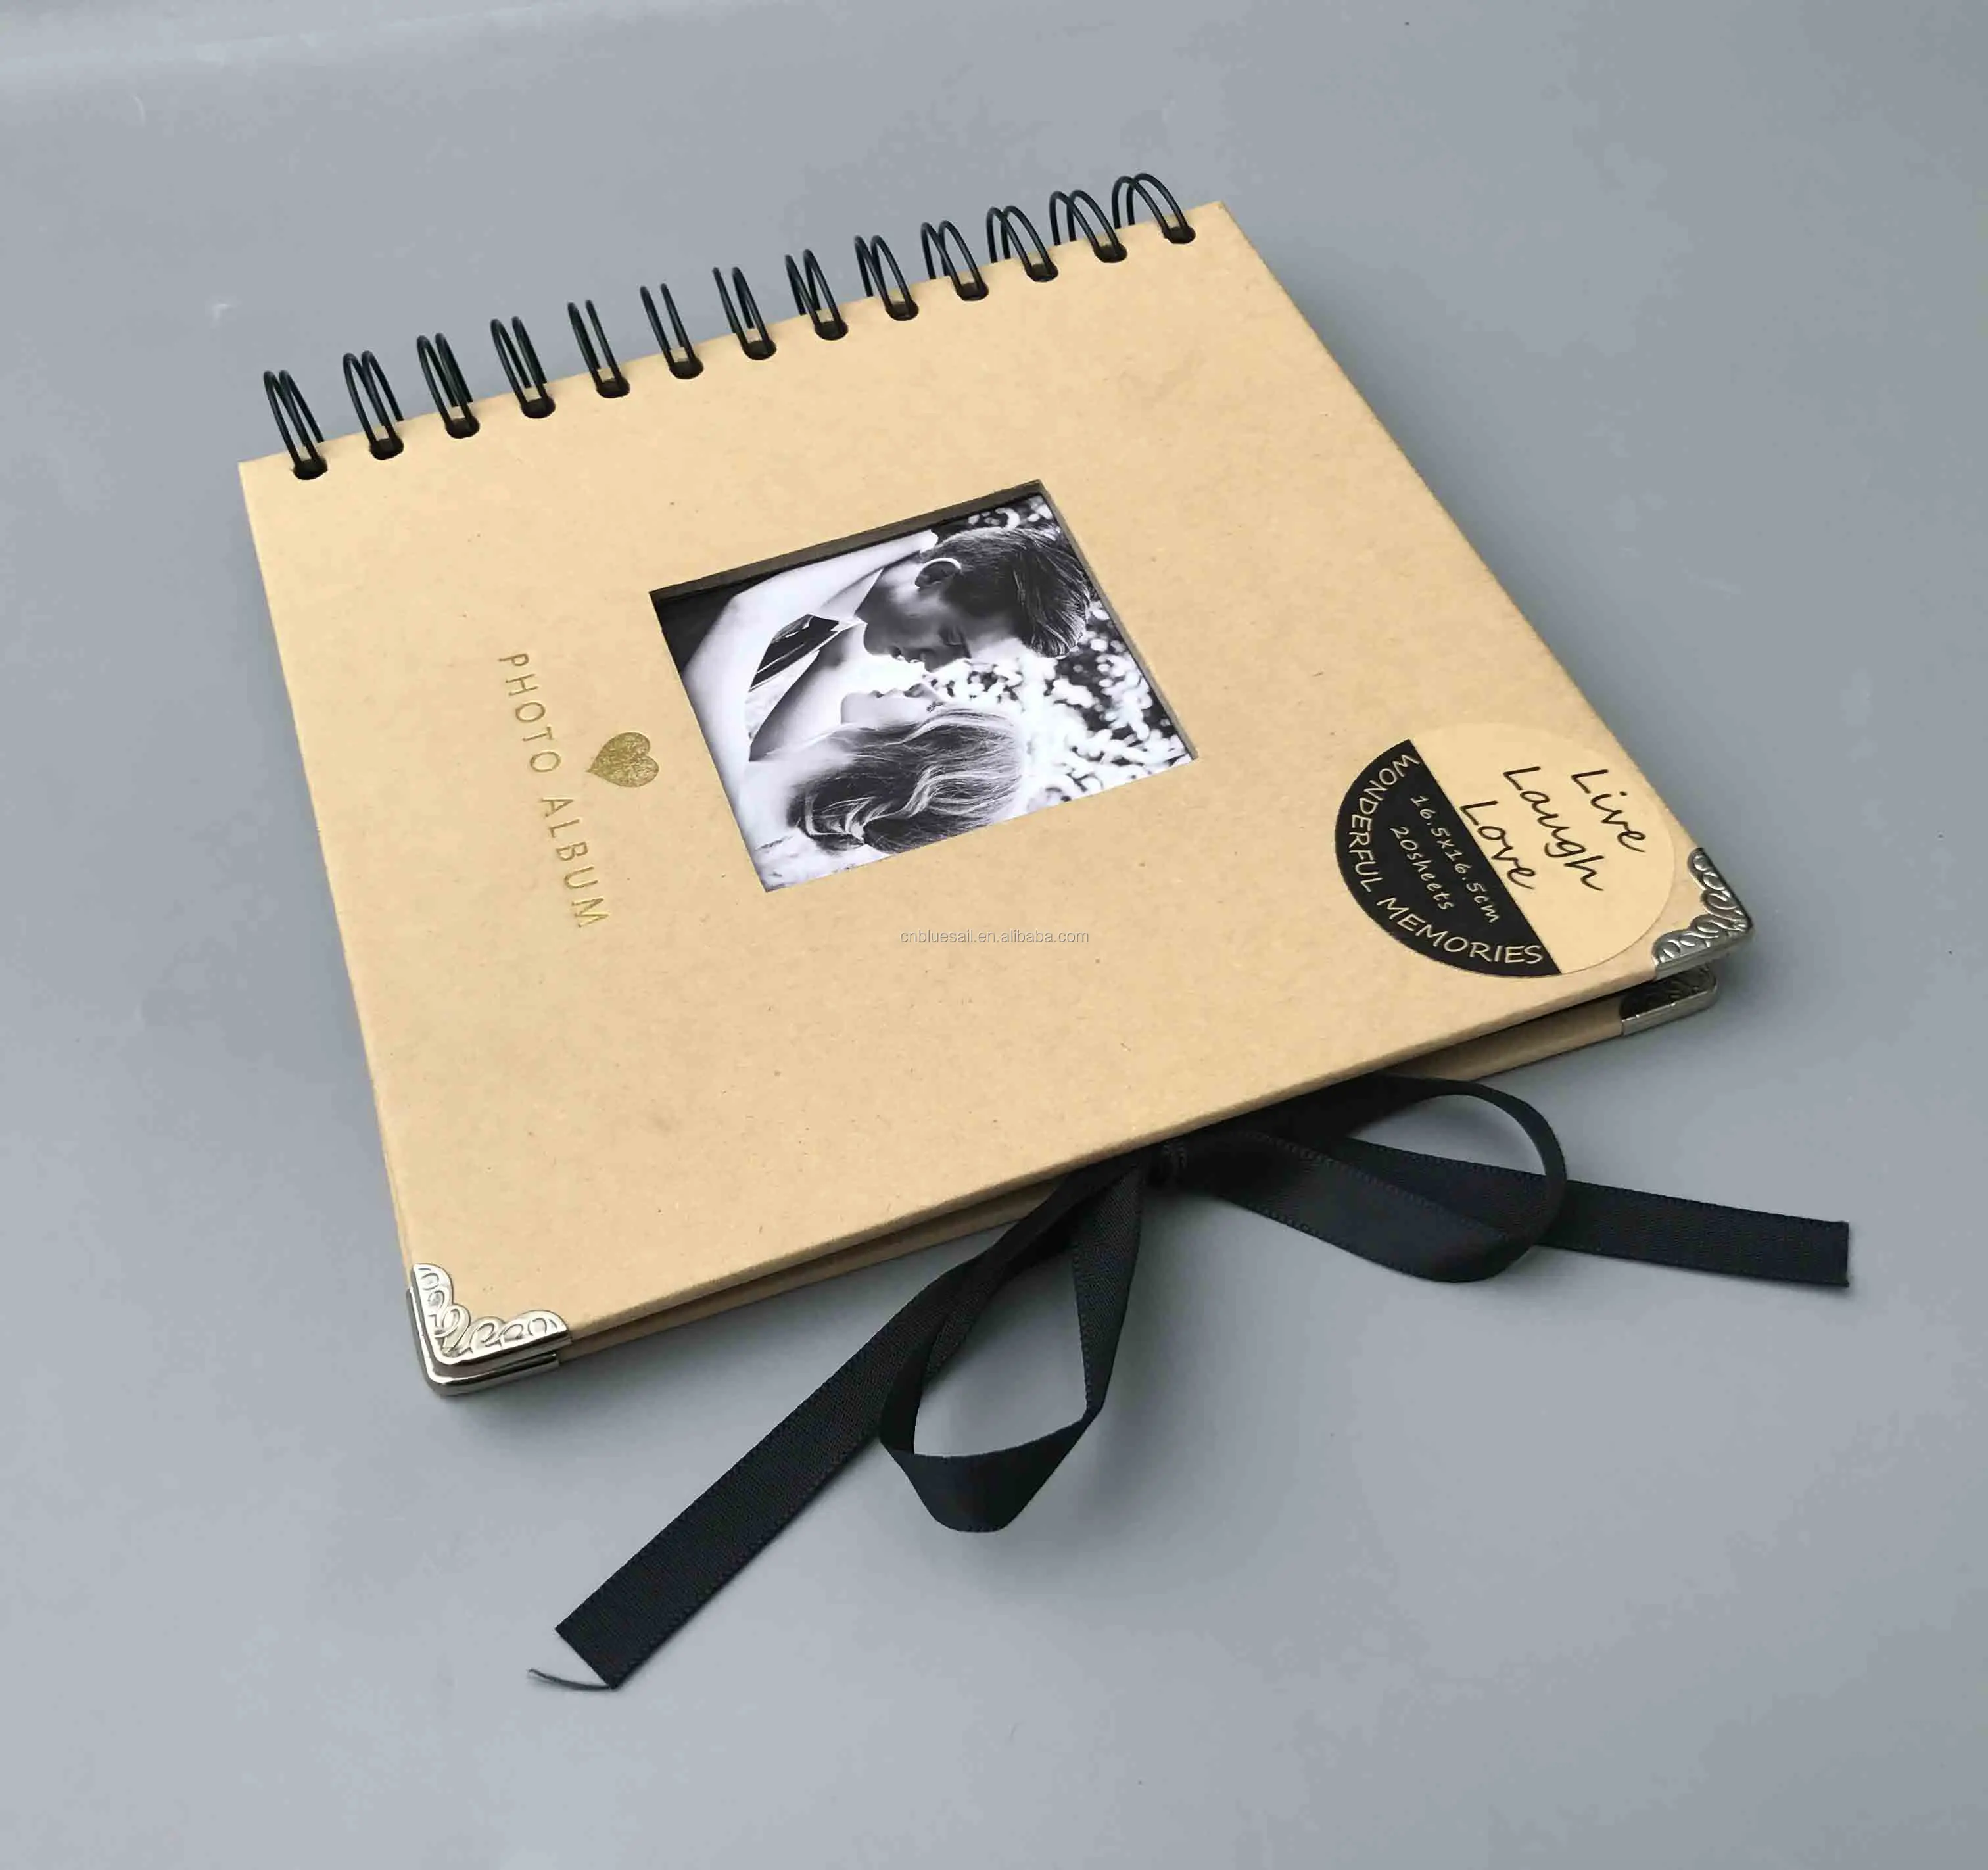 мини альбом для вырезок, 16,5x16,5 см 20 листов фотоальбом, крафт-бумаги  diy фотоальбом| Alibaba.com